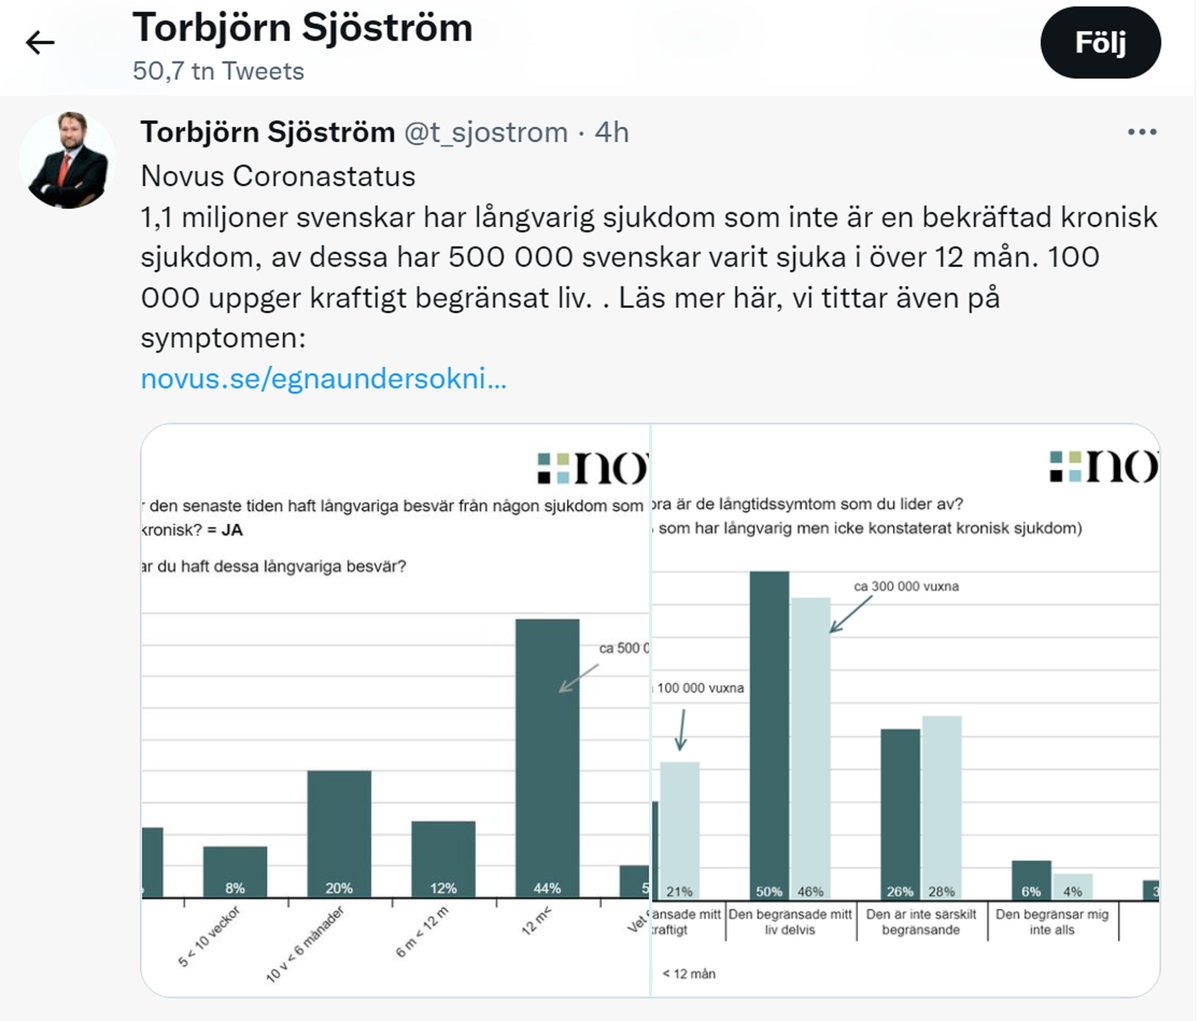 Långtidscovid; ”14 % motsvarande 1,1 miljoner svenskar att de har en långvarig sjukdom som inte är en bekräftad kronisk sjukdom, av dessa har 500 000 svenskar varit sjuka i samma sjukdom över 12 månader.” #svpol #Sweden #Swedengate #HerdDontWork #Sverige #longcovid #Postcovid